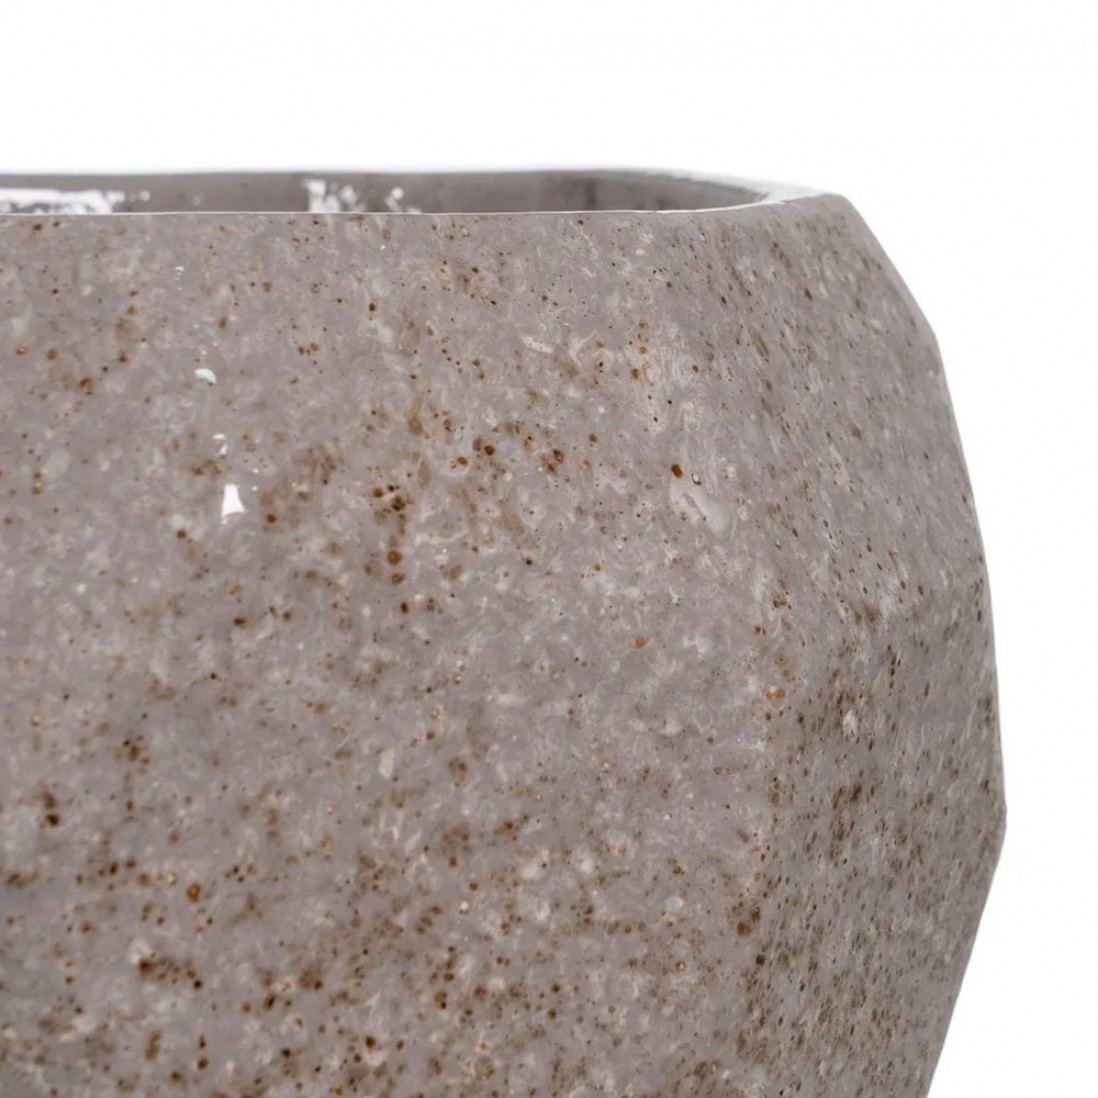 Ceramic Vase 405